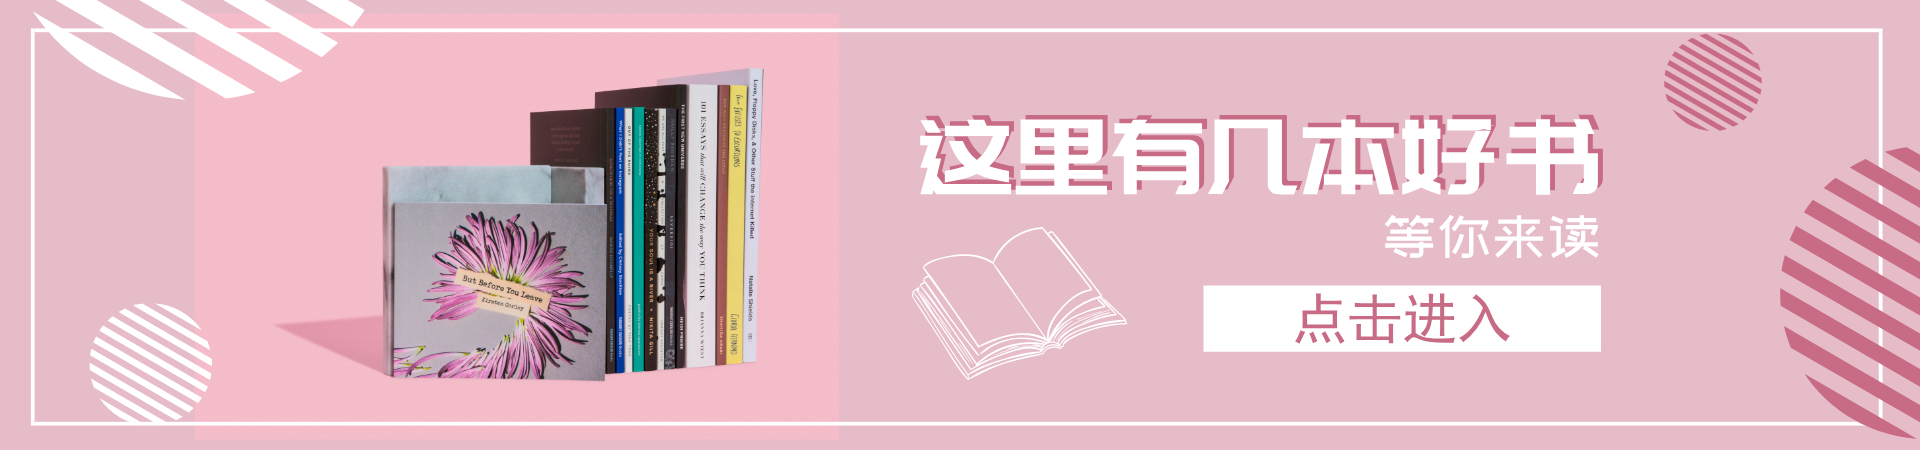 粉色书店书籍淘宝banner_pc首页通栏海报(小)_平面